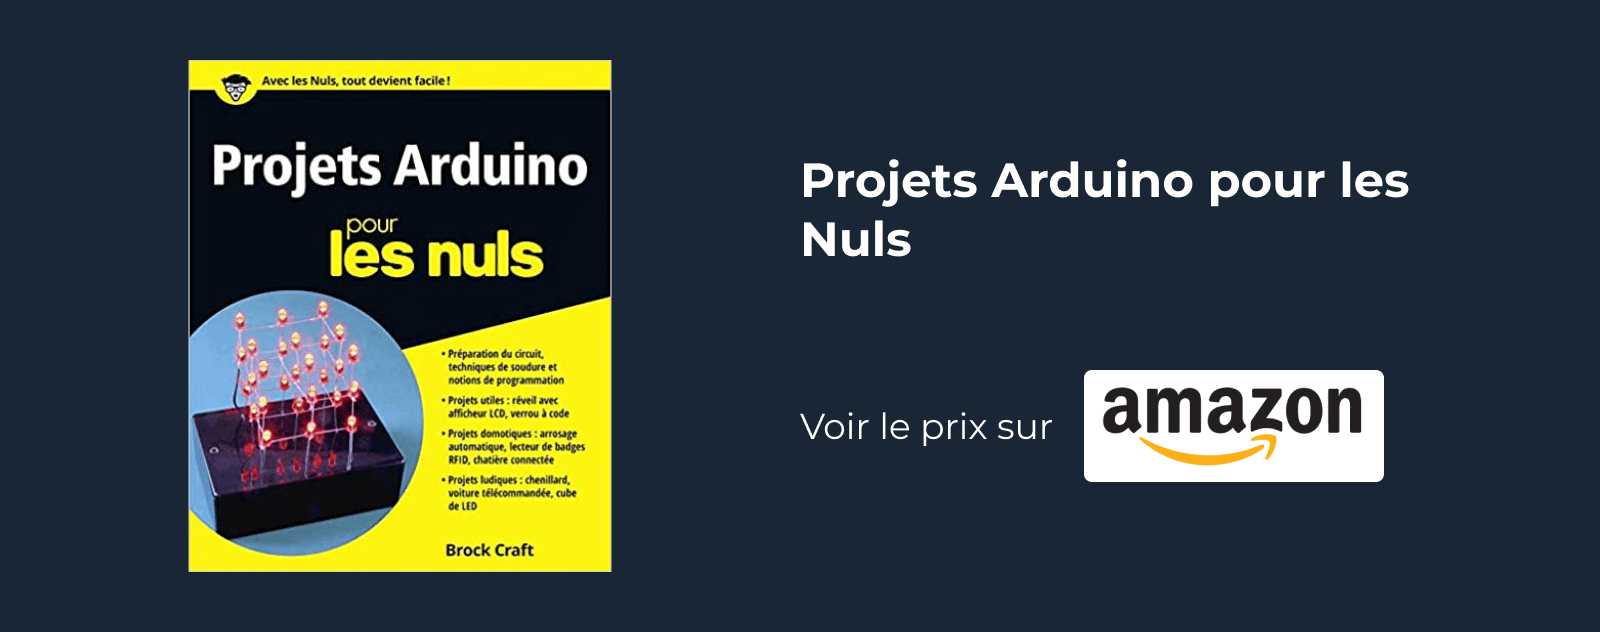 Projets Arduino pour les Nuls